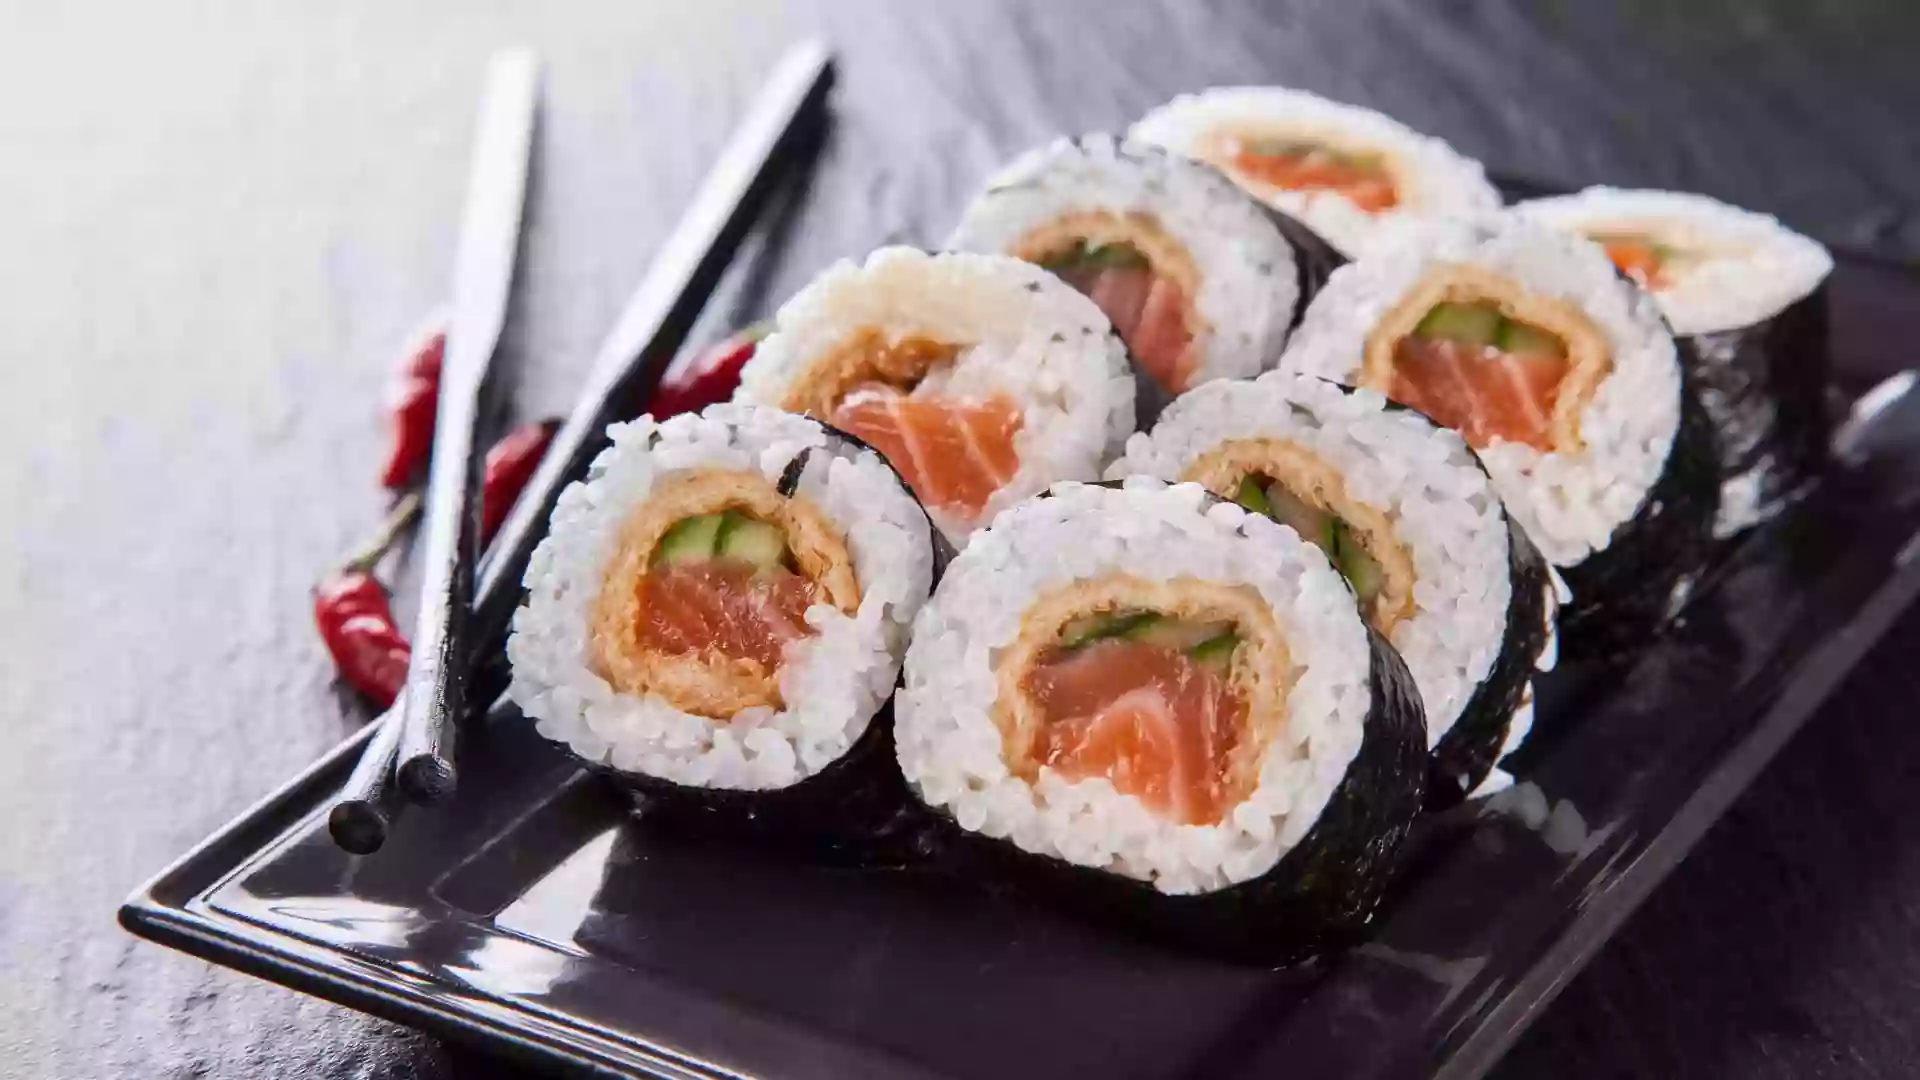 U Sushi